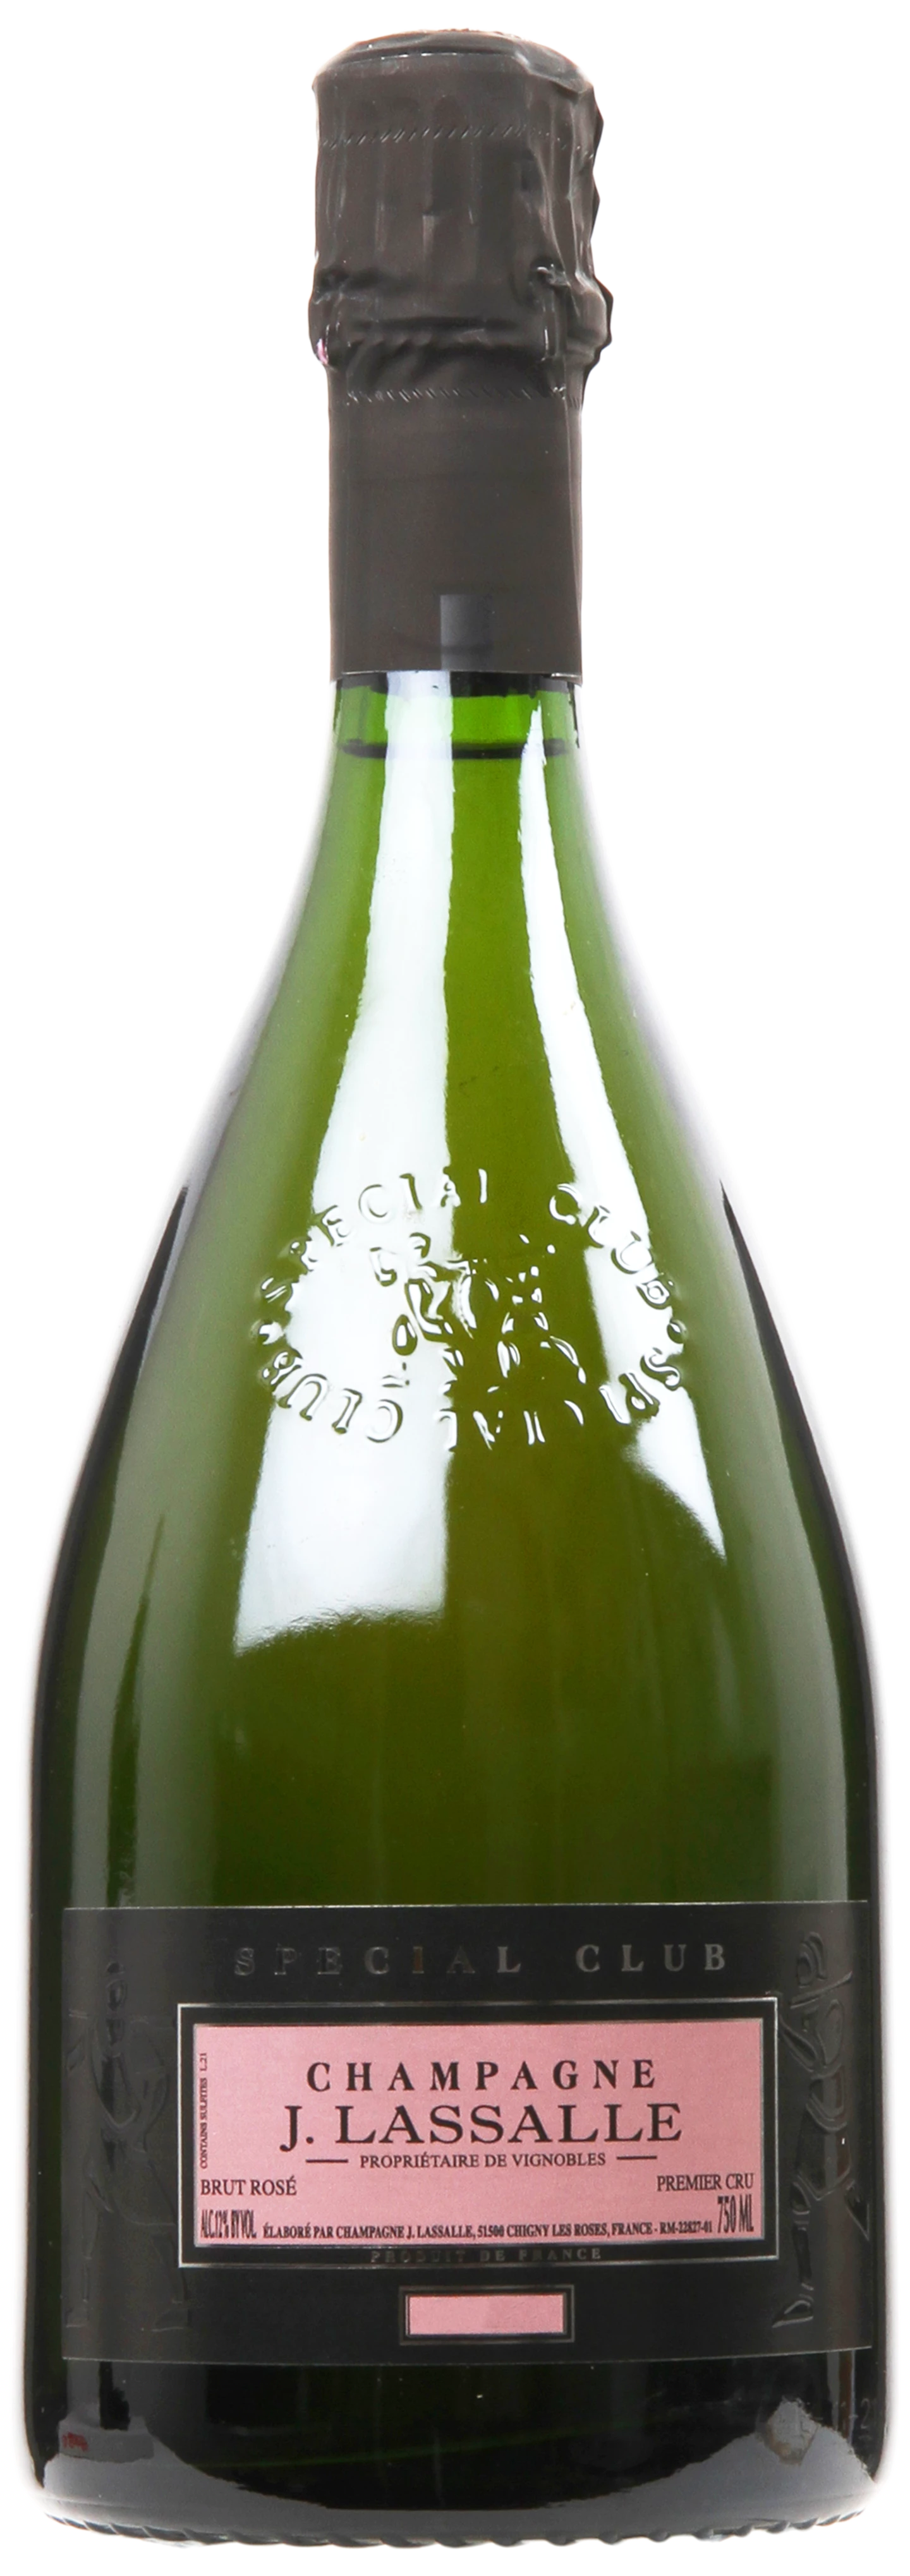 Løgismose Mousserende Champagne J Lassalle Special Club Premier Cru Brut Rosé 150cl 2014 - 220915